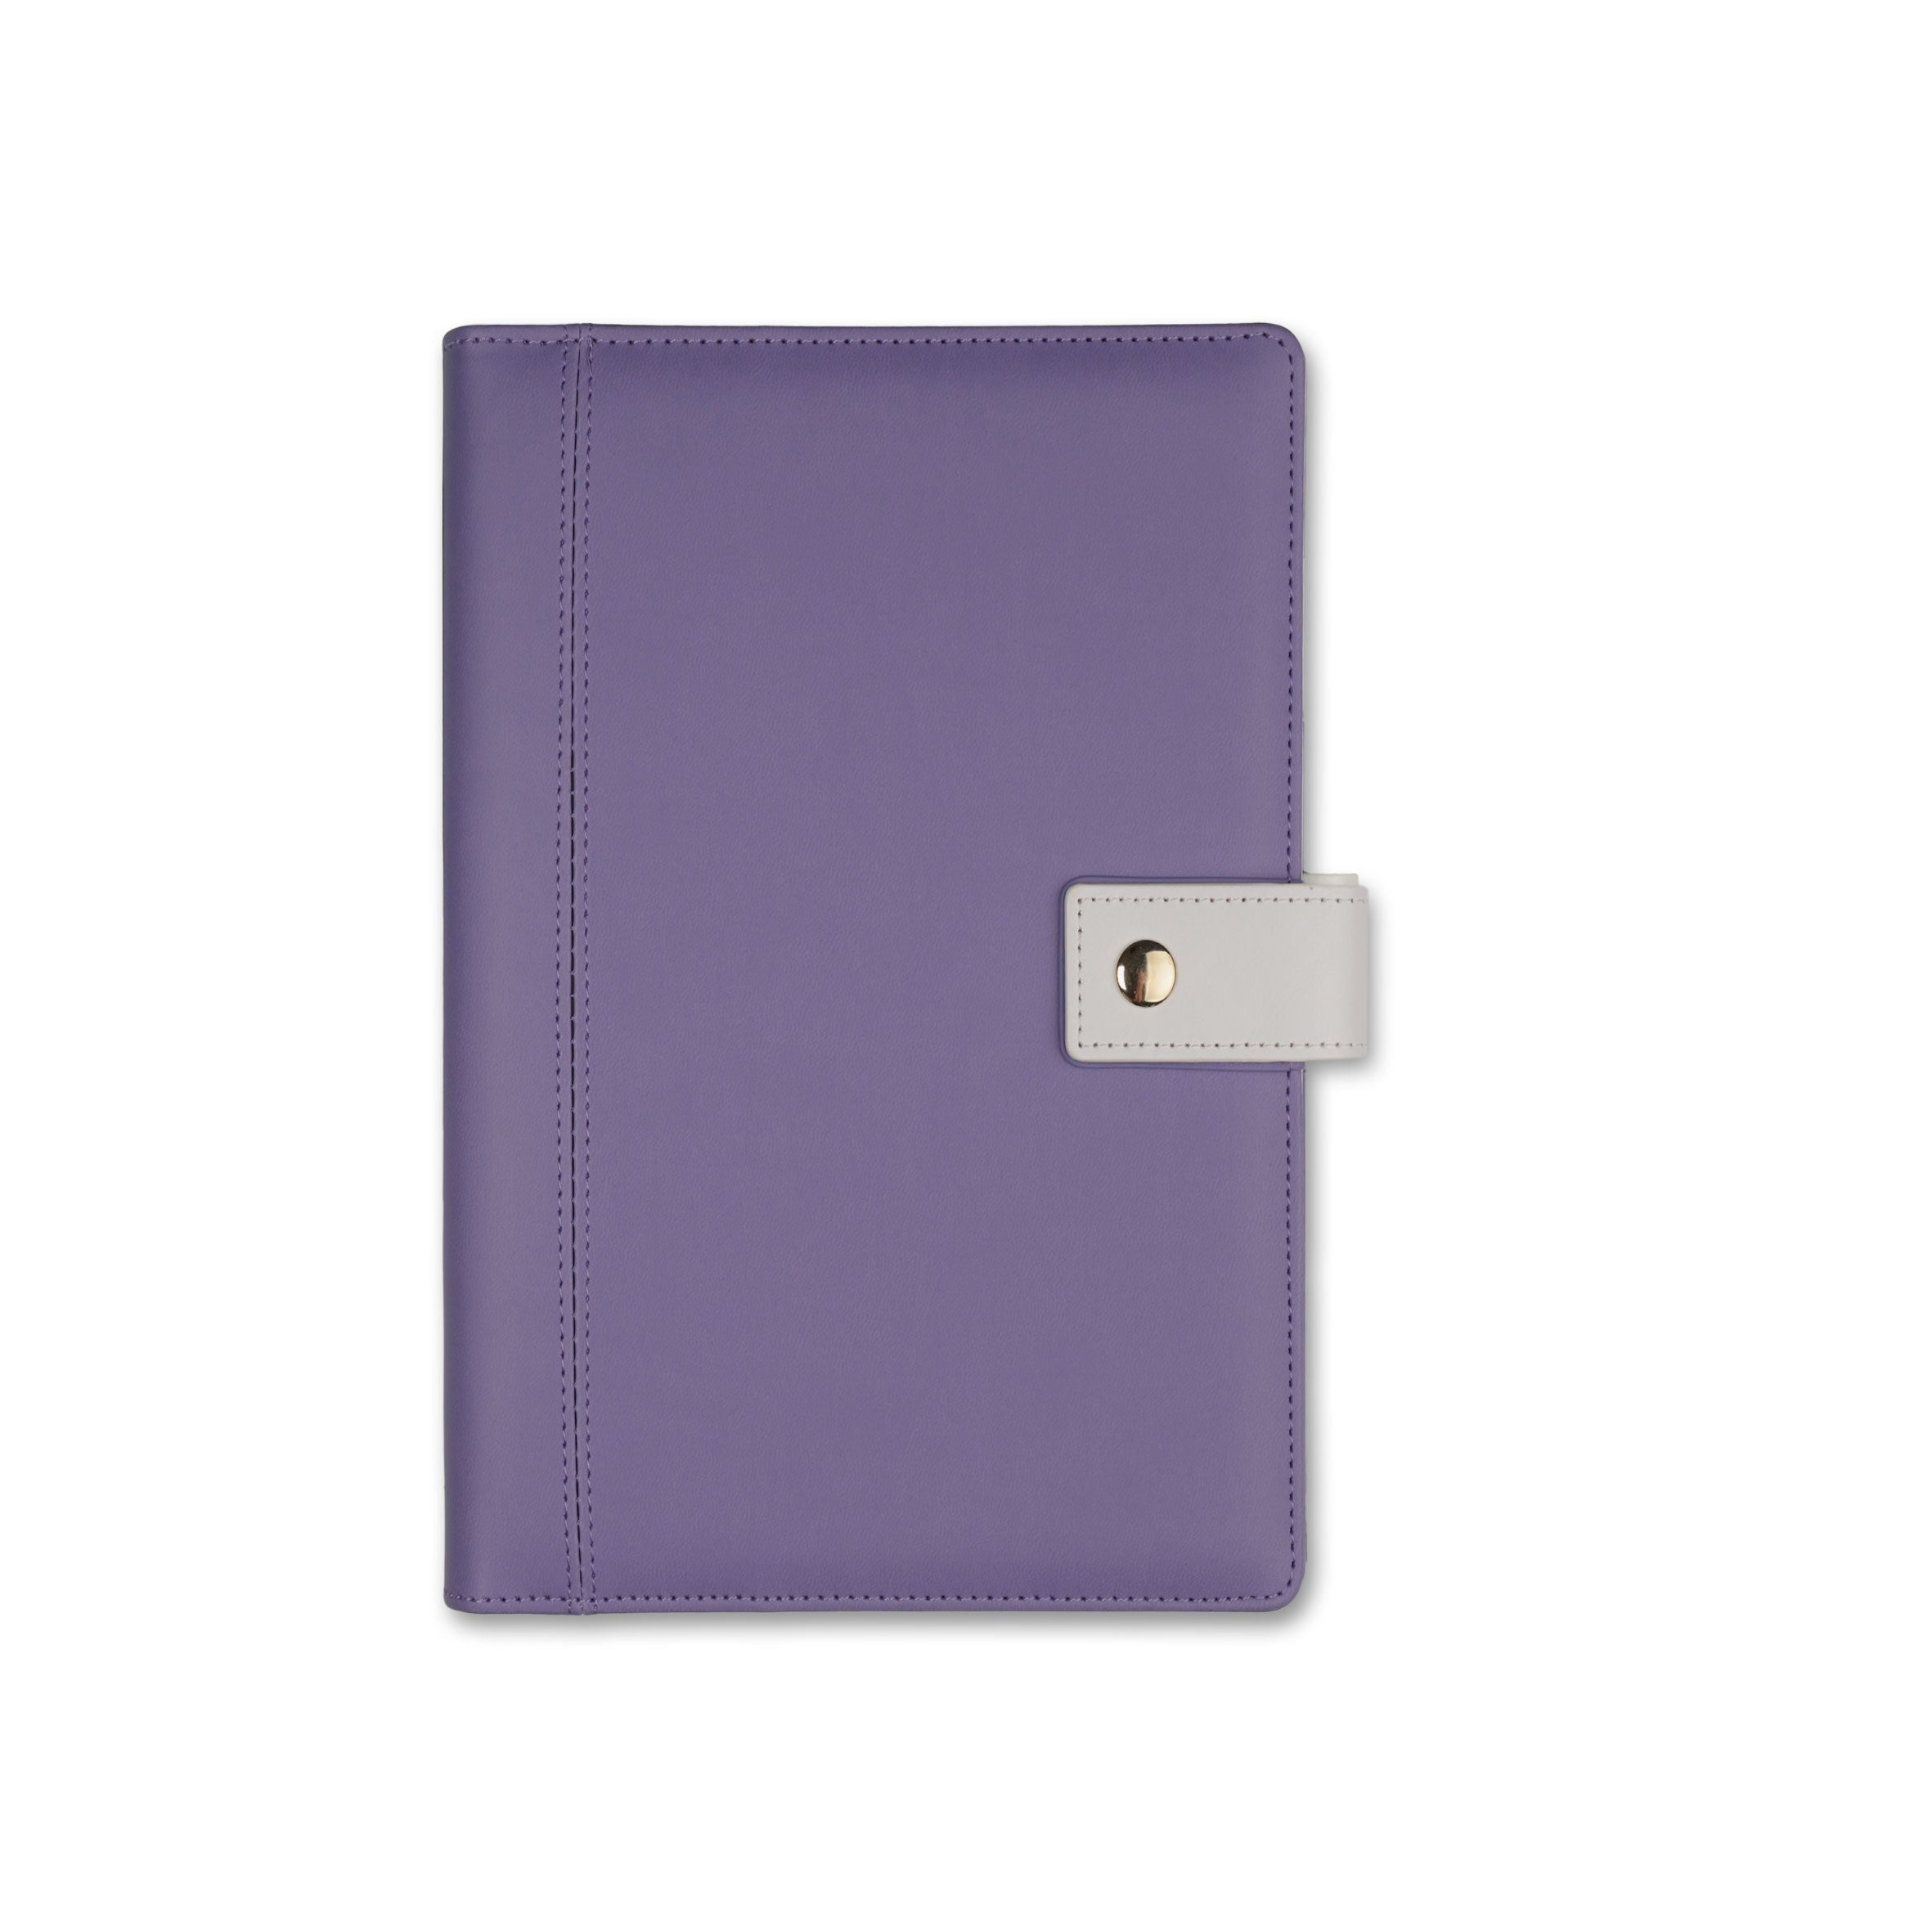 Agendă piele ecologică A6 (mică) Lilac Purple Quartz Office